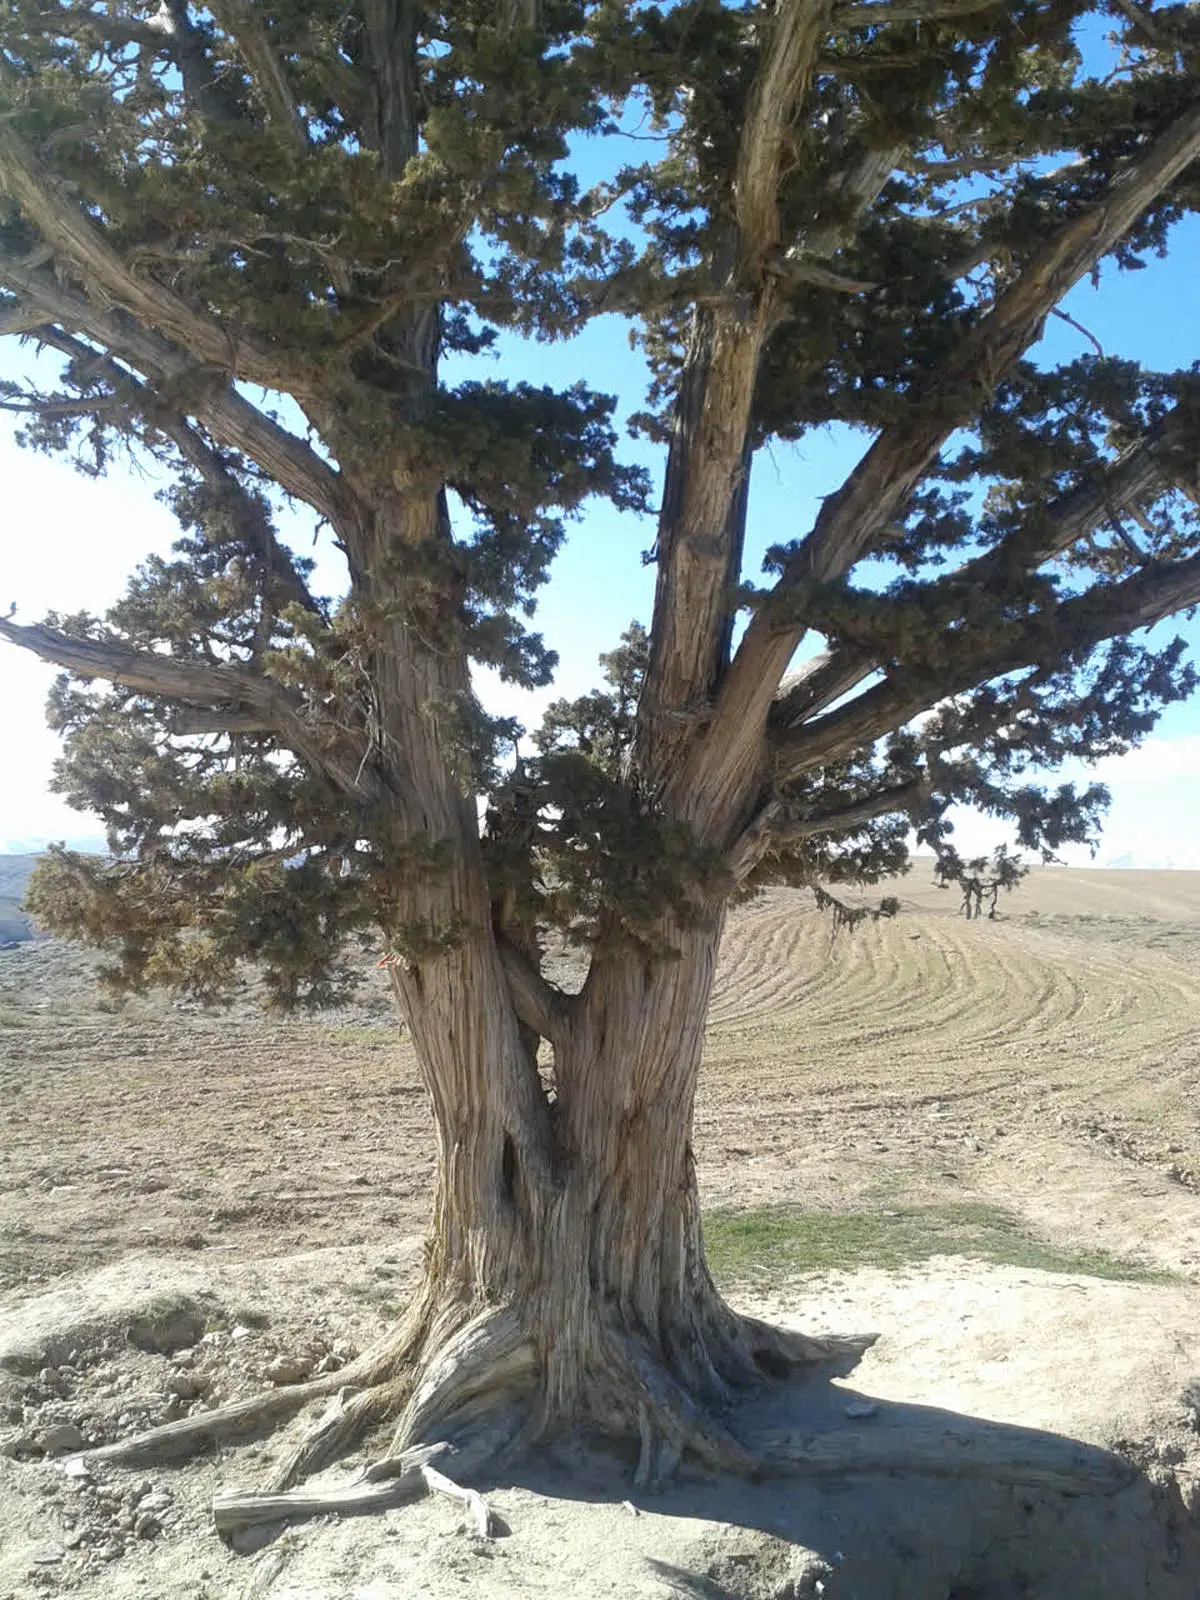 ثبت ملی درخت زیبای ارس